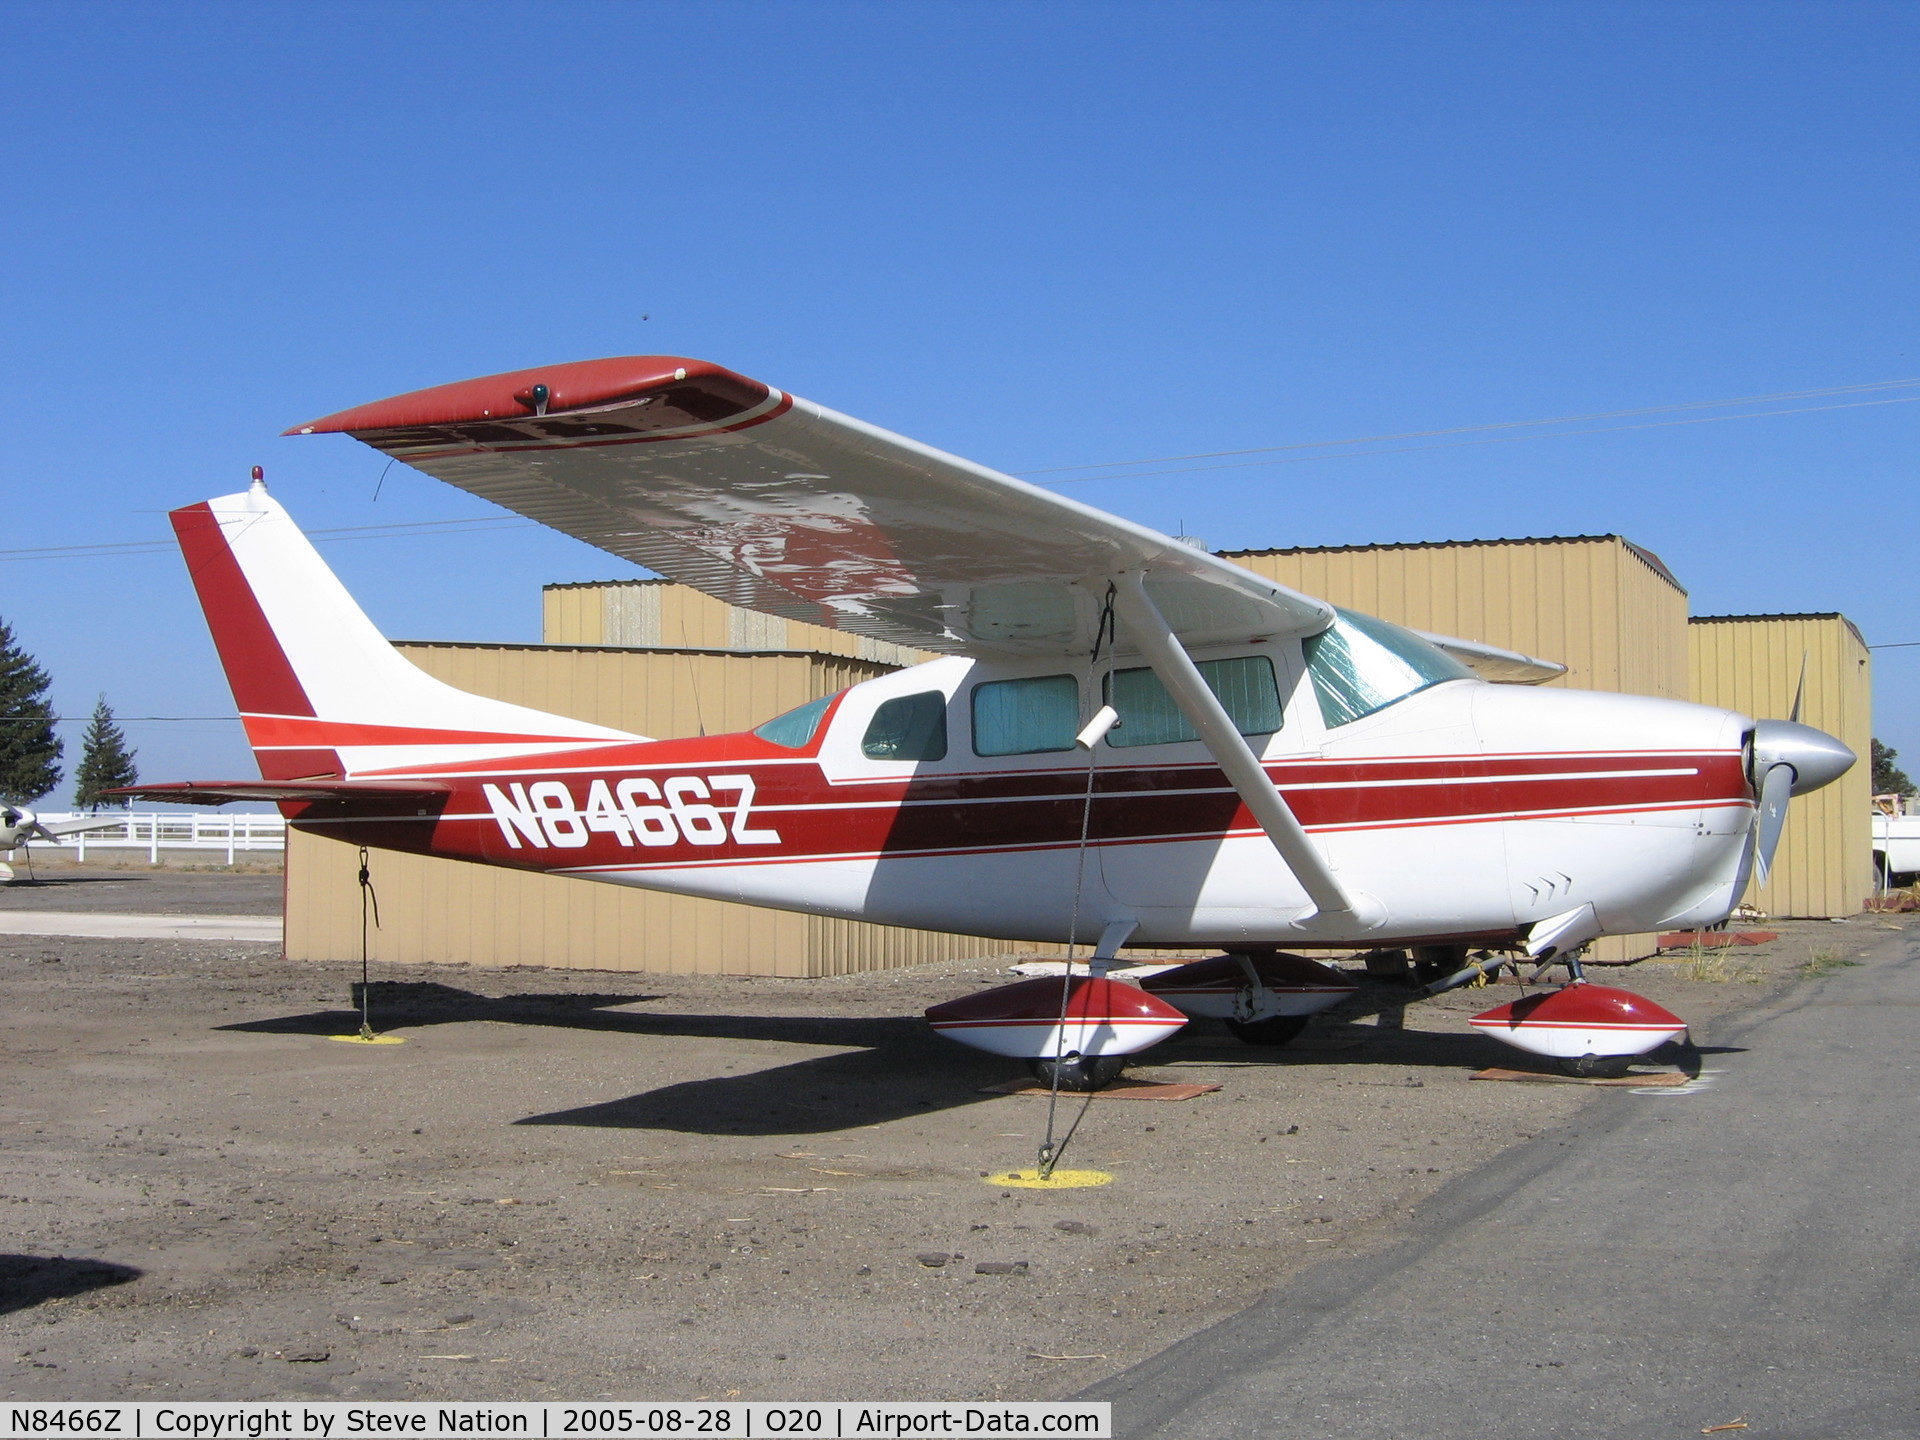 N8466Z, 1963 Cessna 210-5(205) C/N 2050466, 1963 Cessna 210 at Kingdon Airport, Lodi, CA